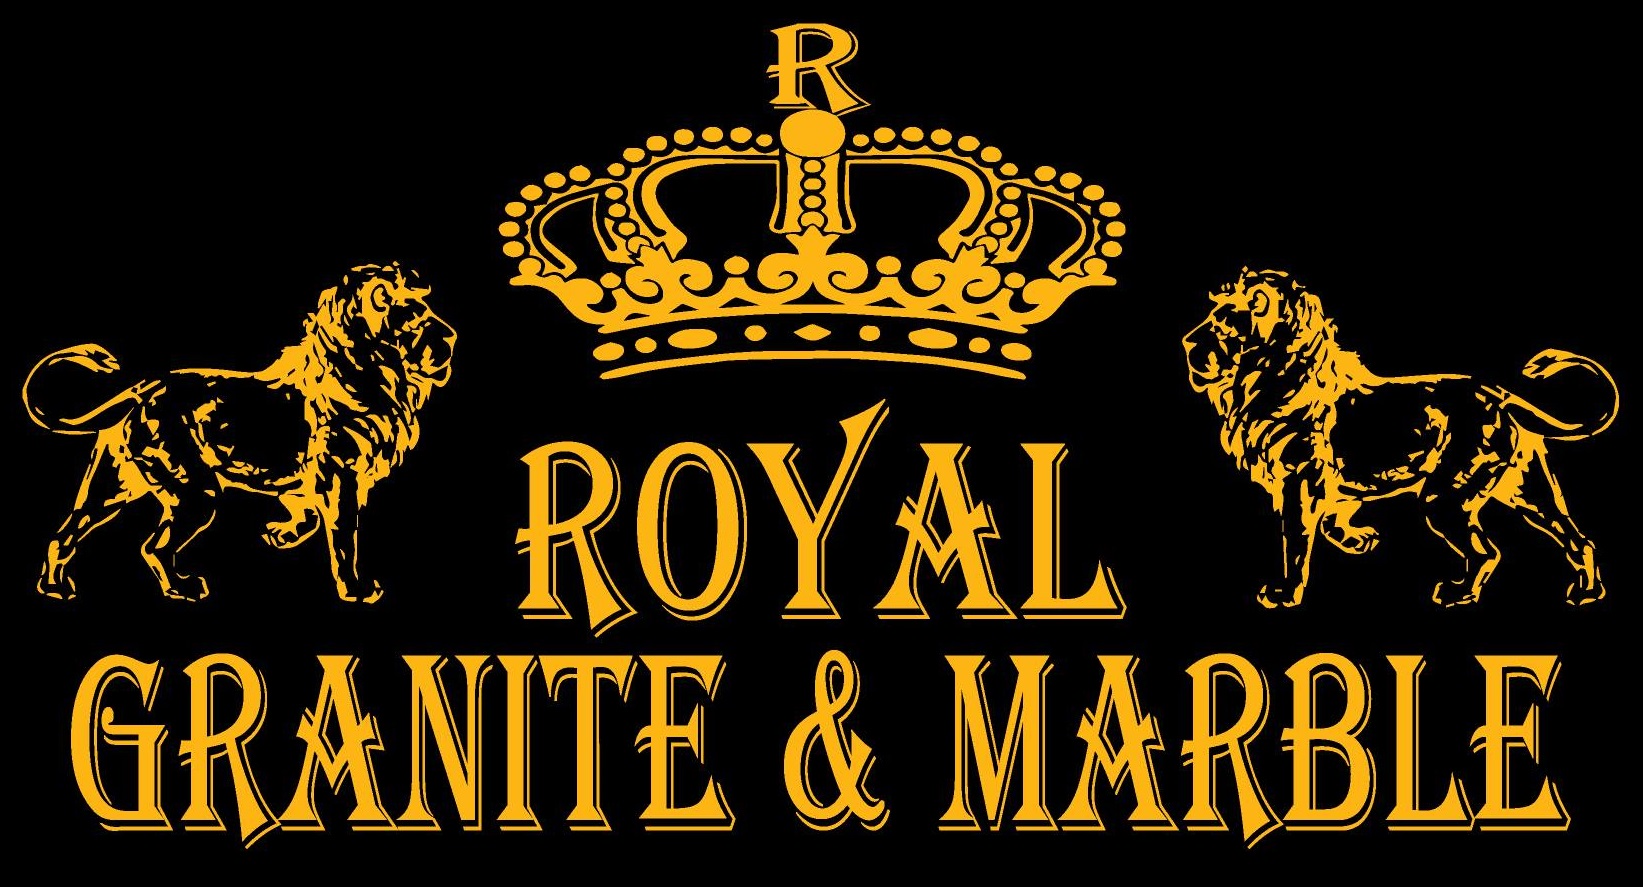 Royal Granite & Marbles